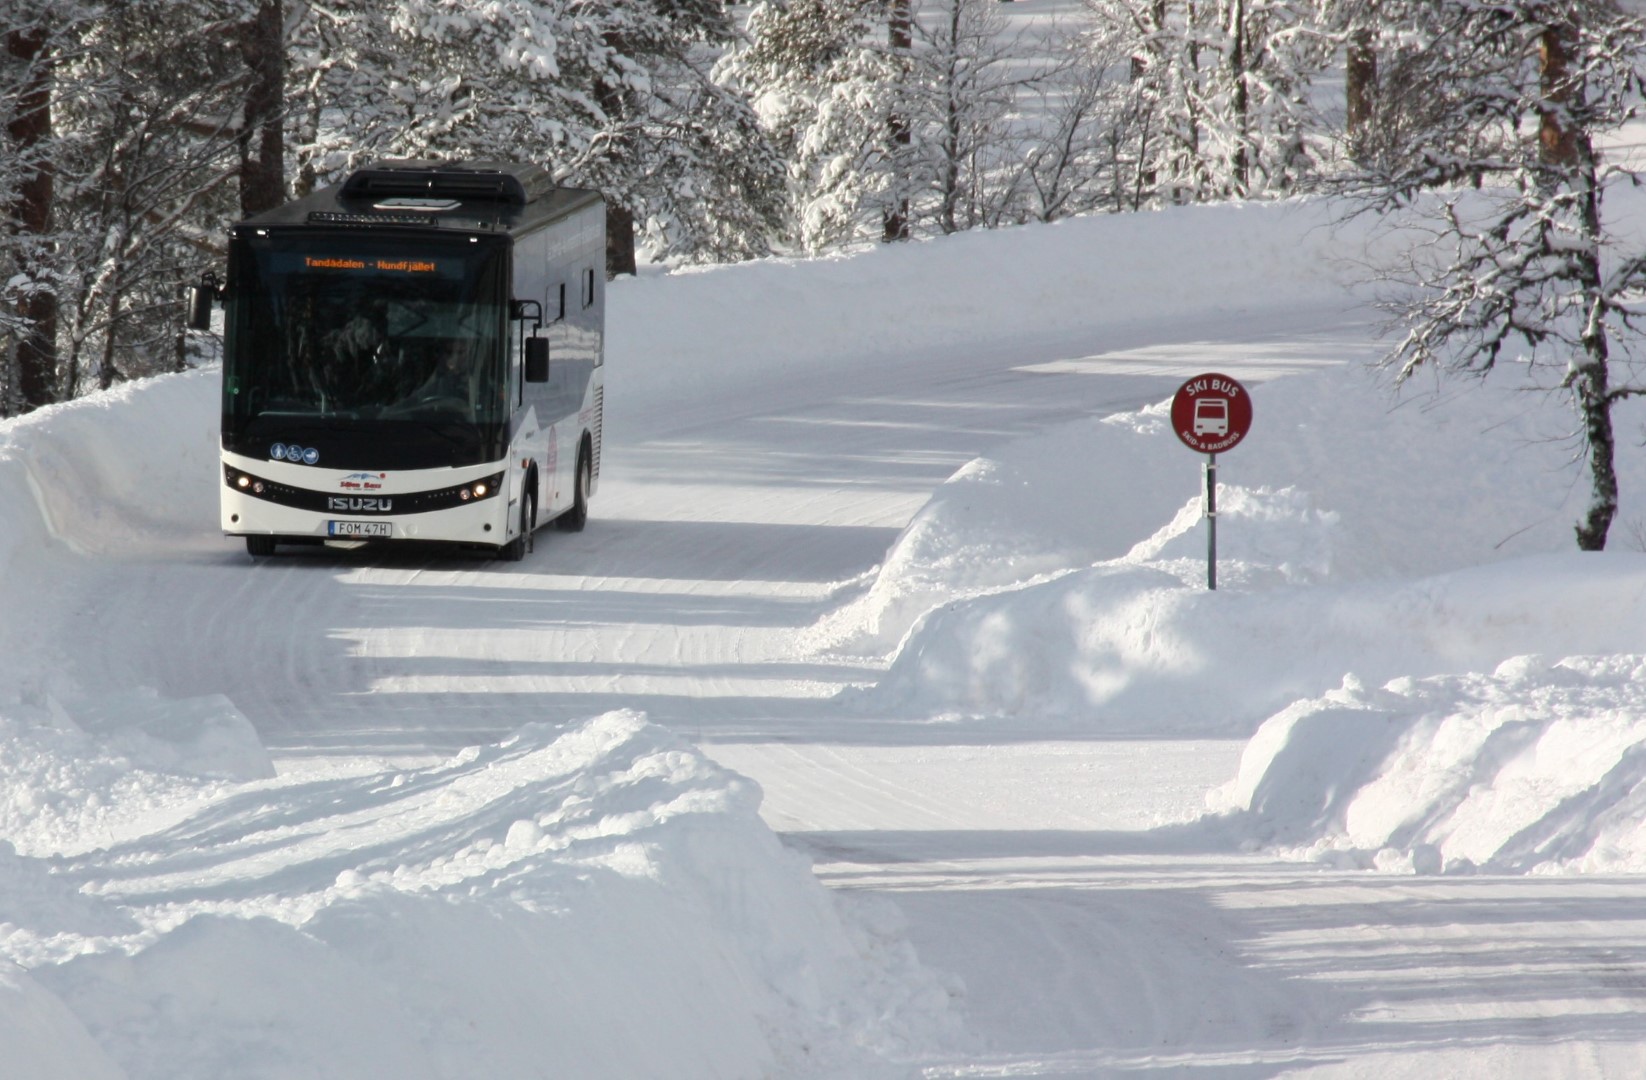 Allison şanzıman donanımlı Isuzu otobüsler, Kayak Turizminde ulaşım verimliliğini zirveye taşıyor.